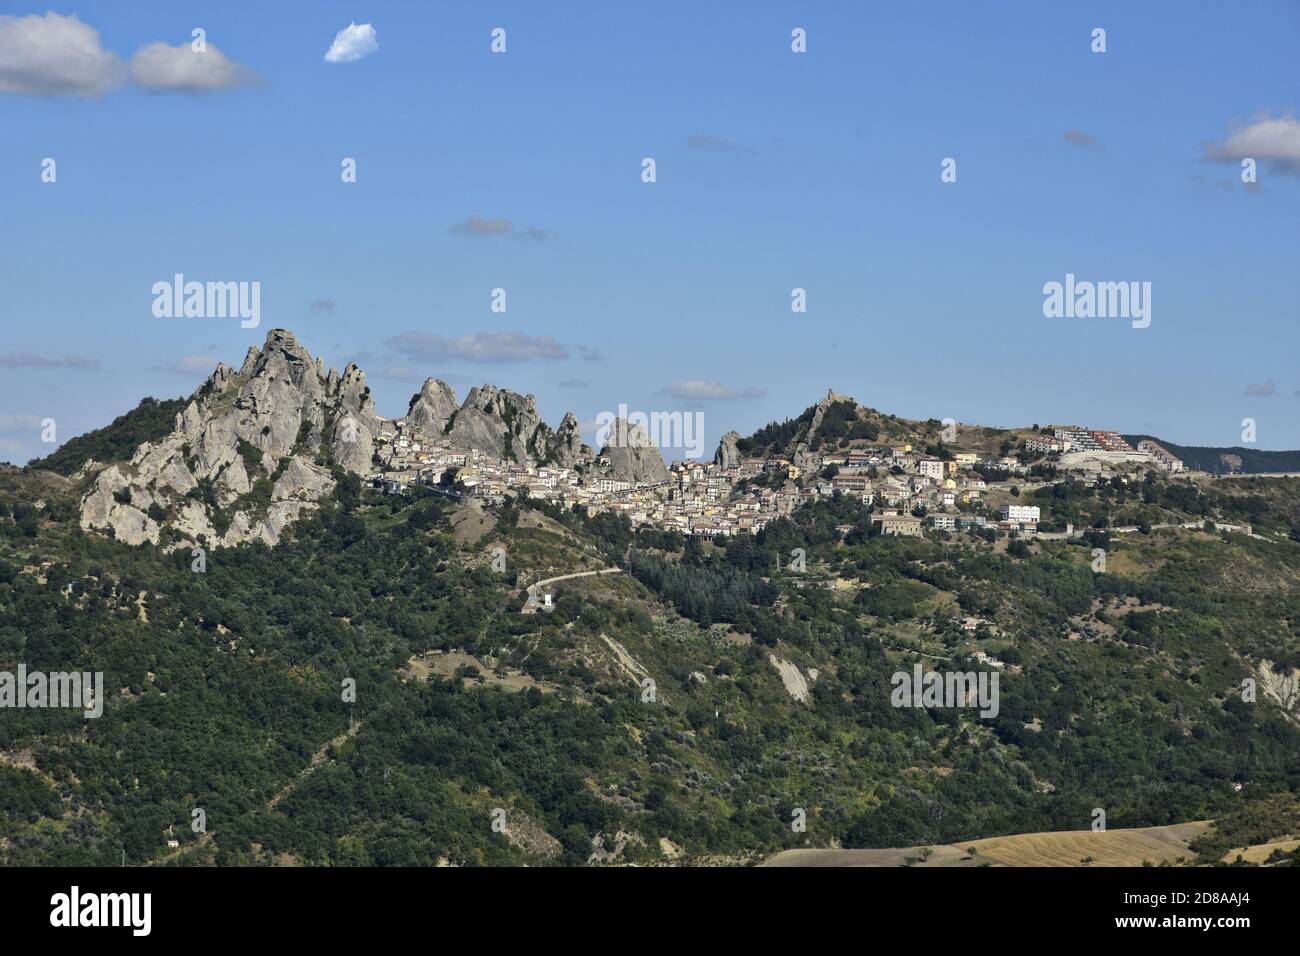 Vue panoramique sur Pietrapertosa, une vieille ville située dans les montagnes de la région de Basilicate, en Italie. Banque D'Images